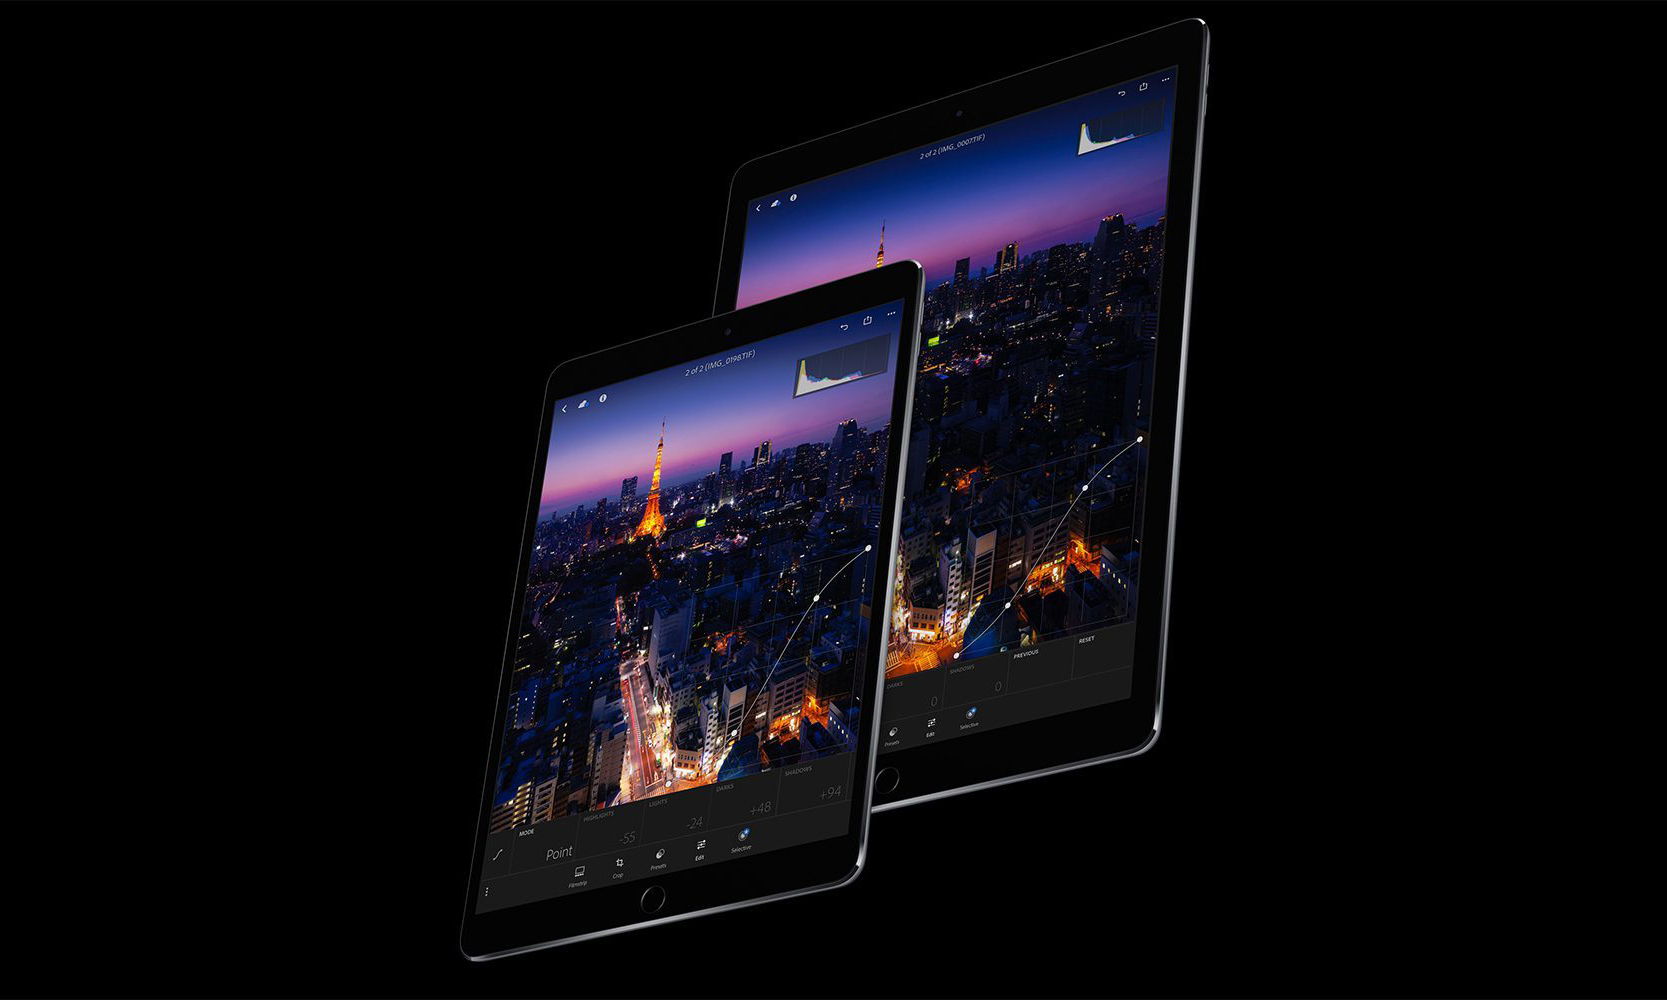 新 iPad Pro 将搭载 A12X 芯片,处理速度超 A1